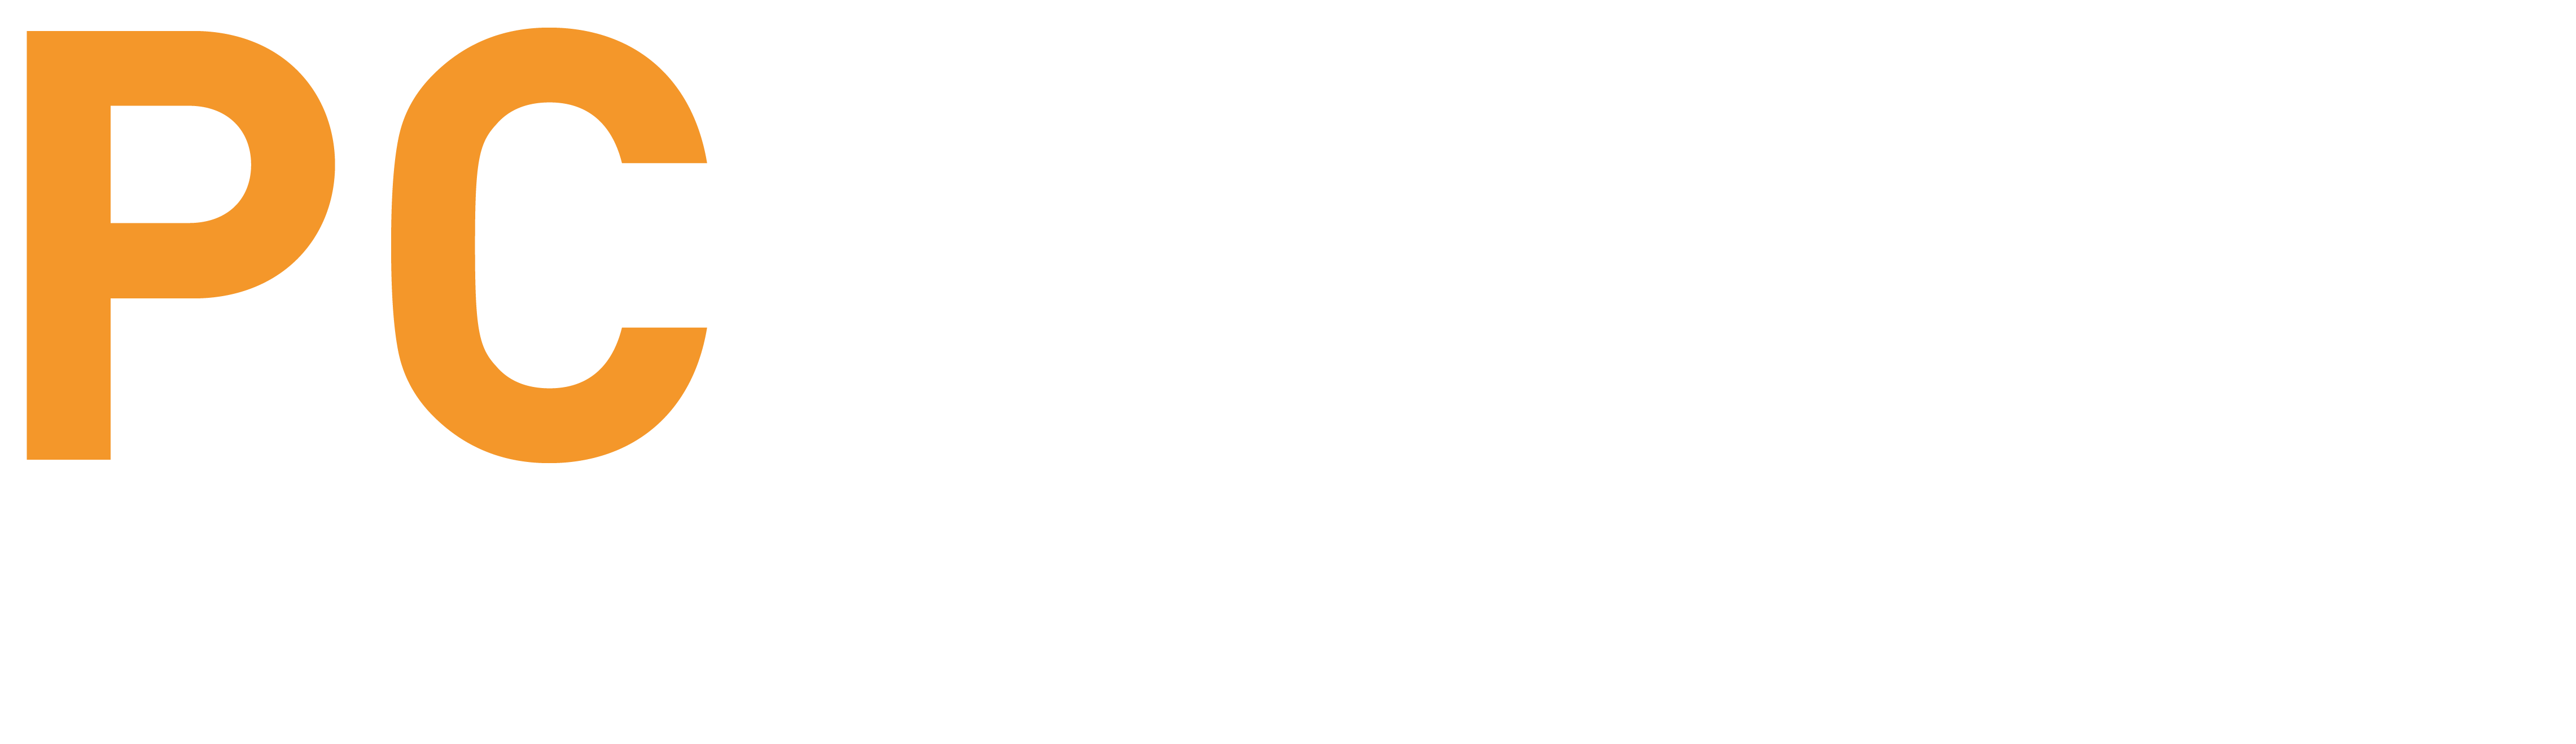 PCmover Enterprise Logo